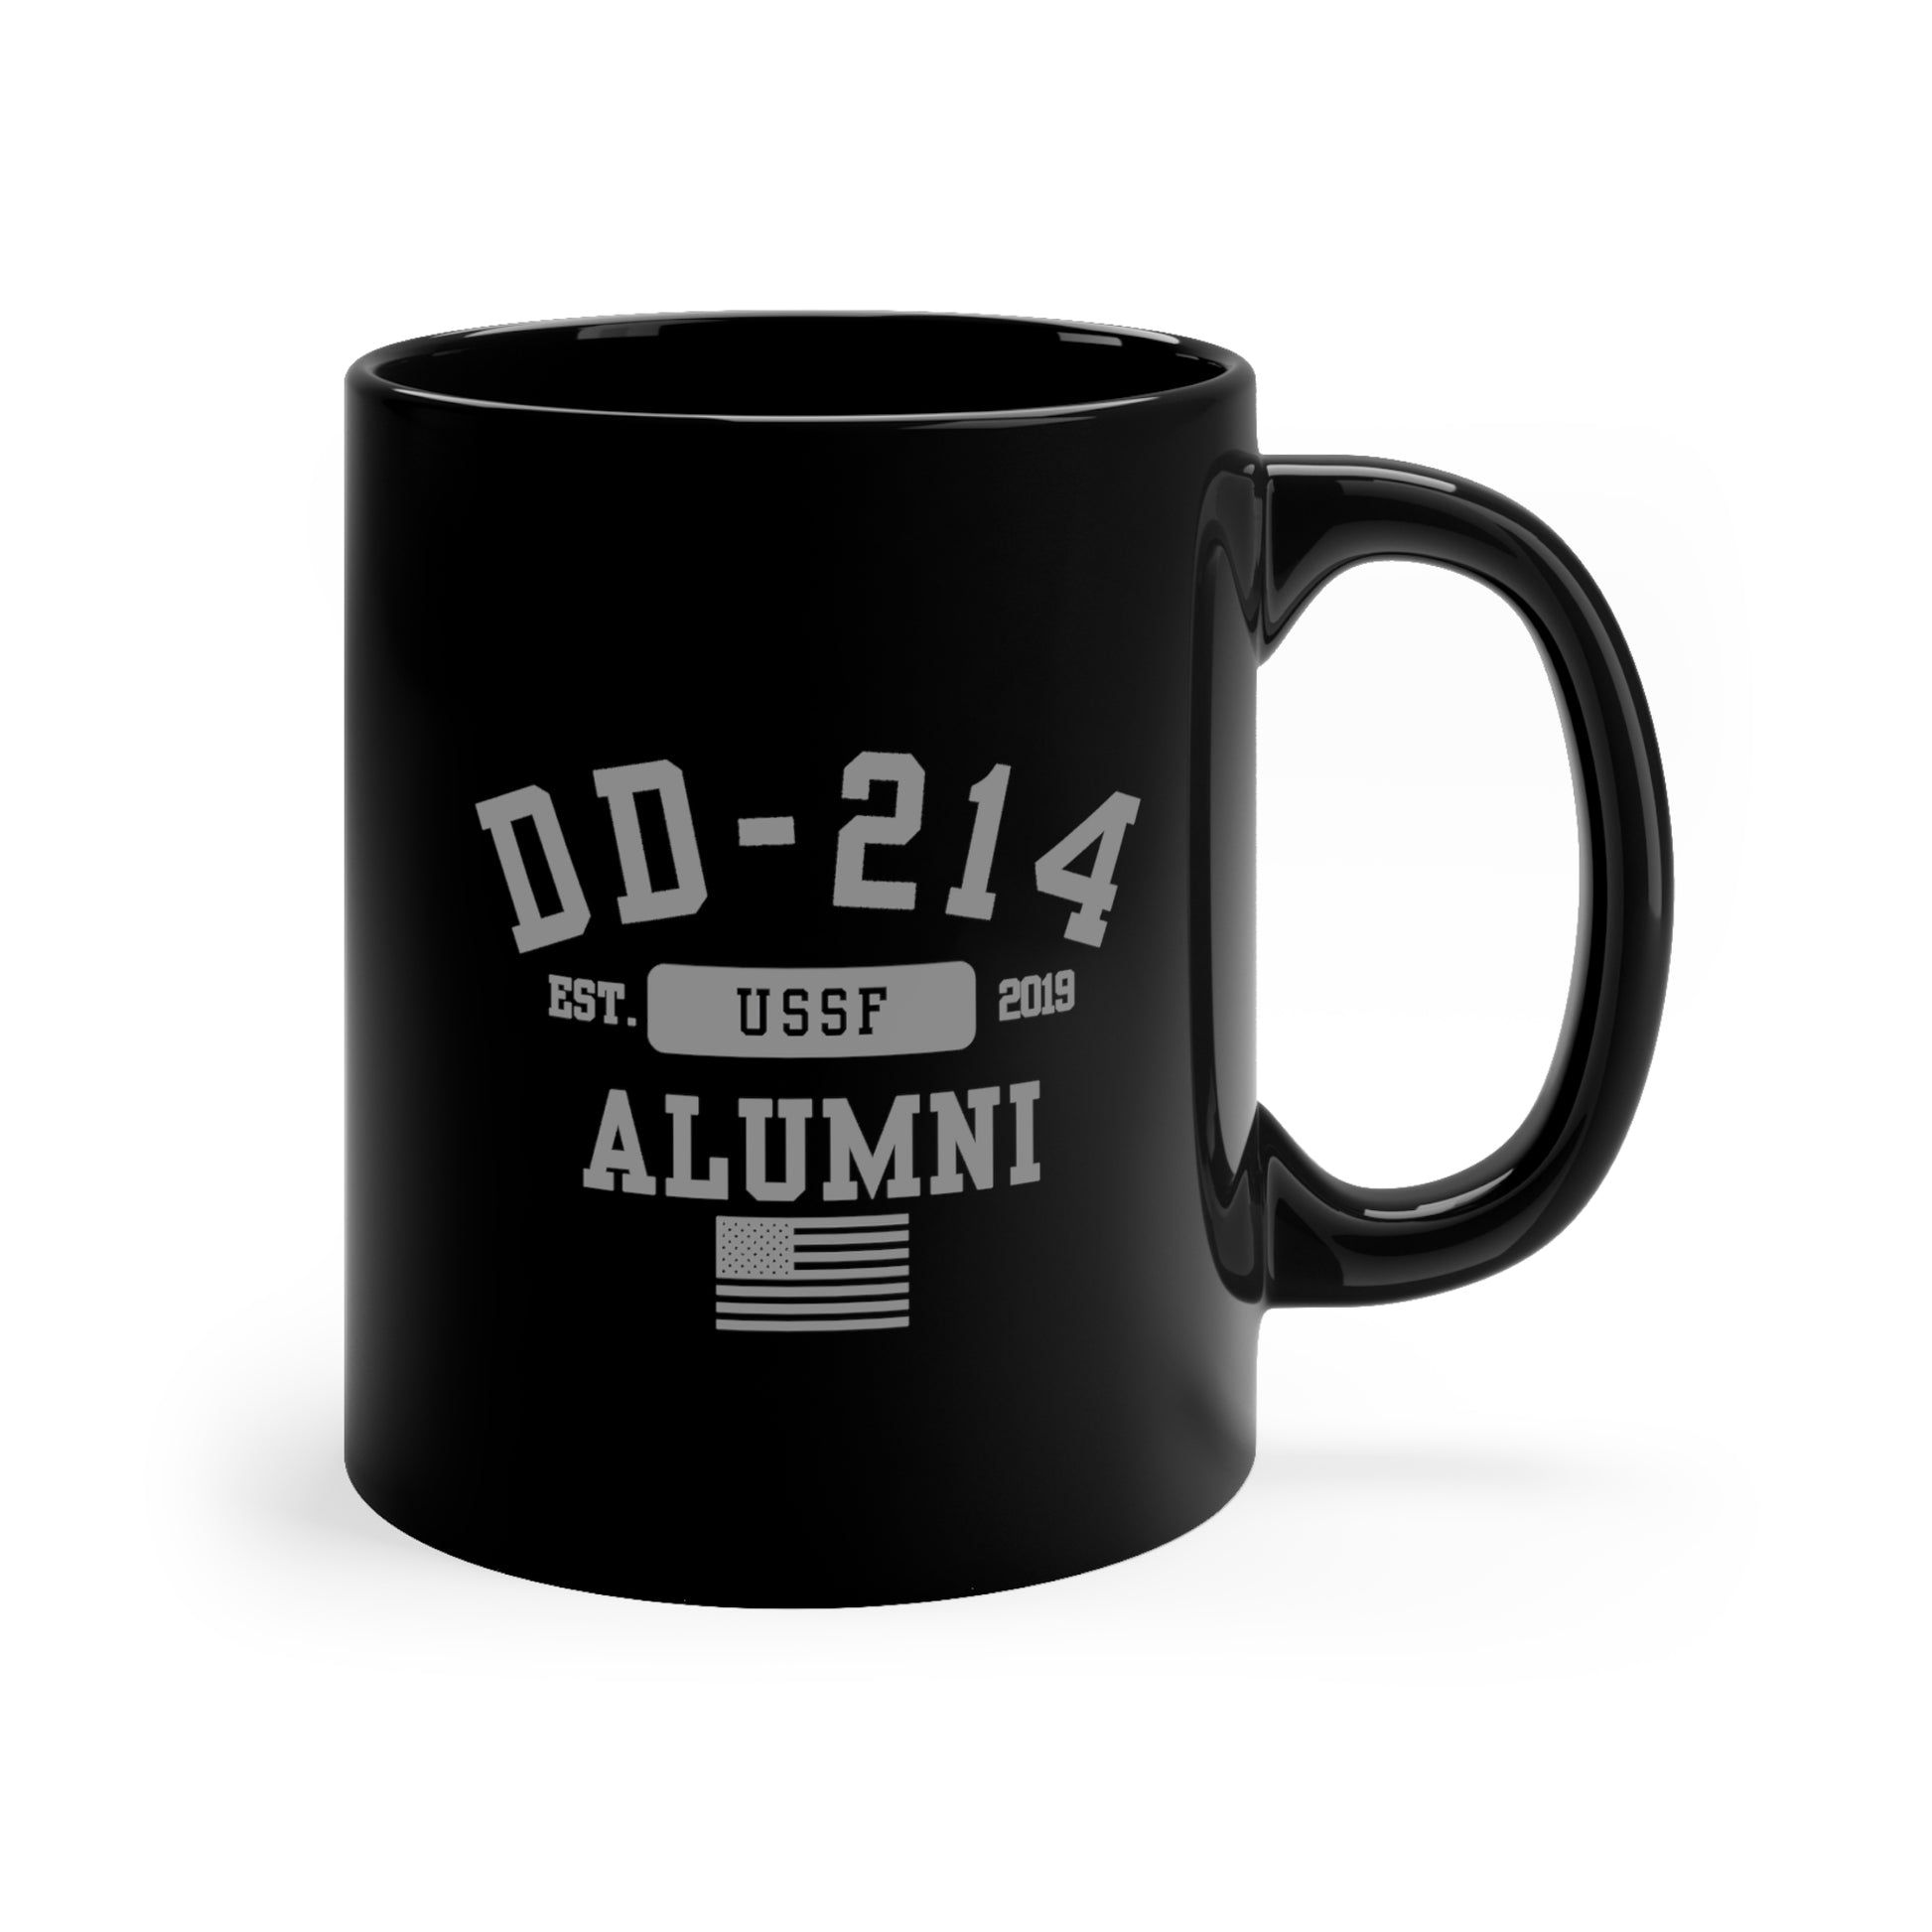 DD-214 Alumni (USSF) - 11oz Black Mug - Premium Mug from Printify - Just $19.97! Shop now at Grizzly Creek Apparel